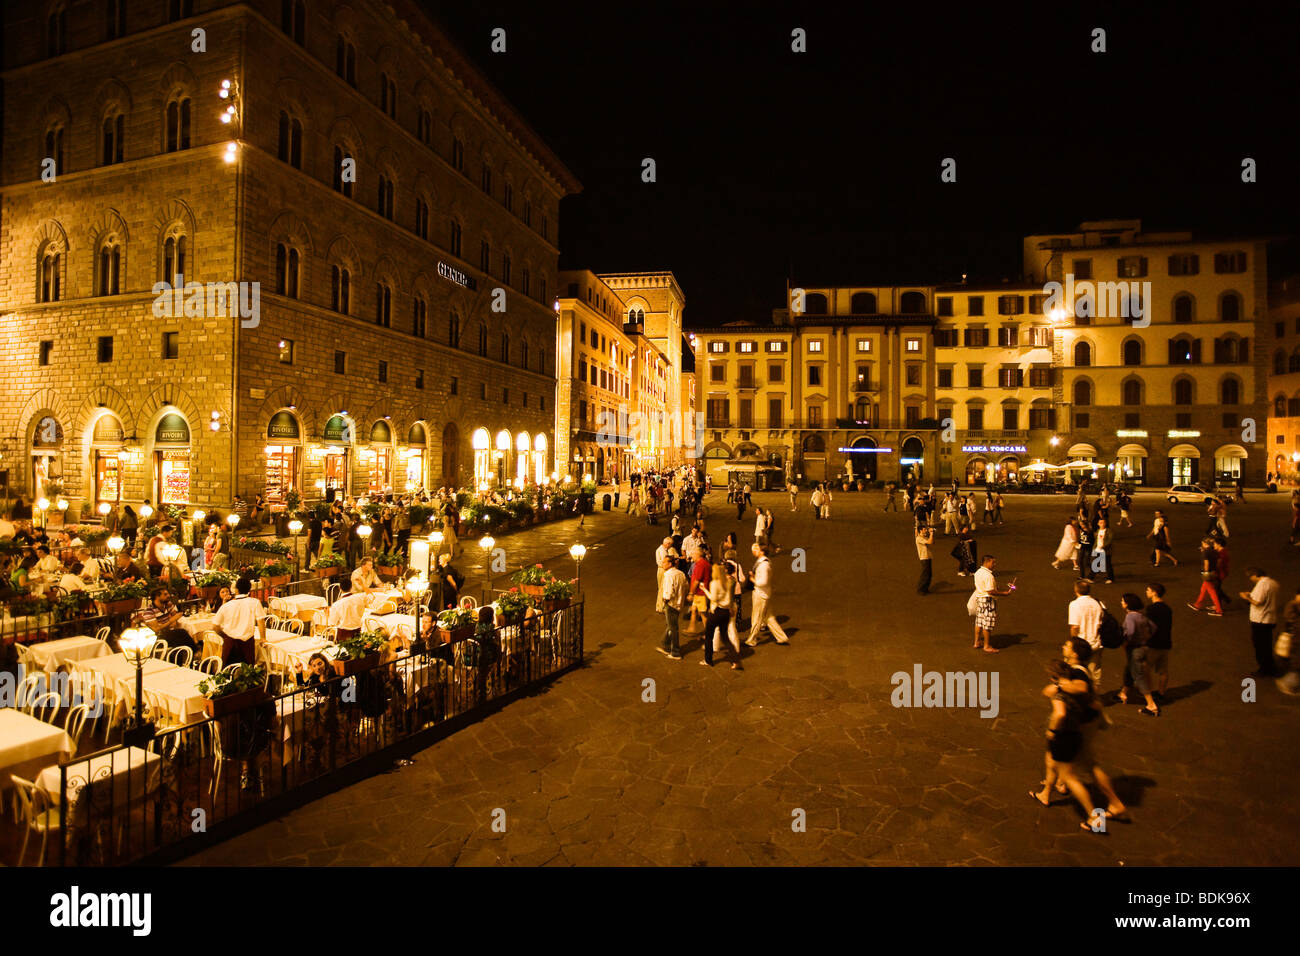 Piazza della Signoria at night, Florence, Italy Stock Photo